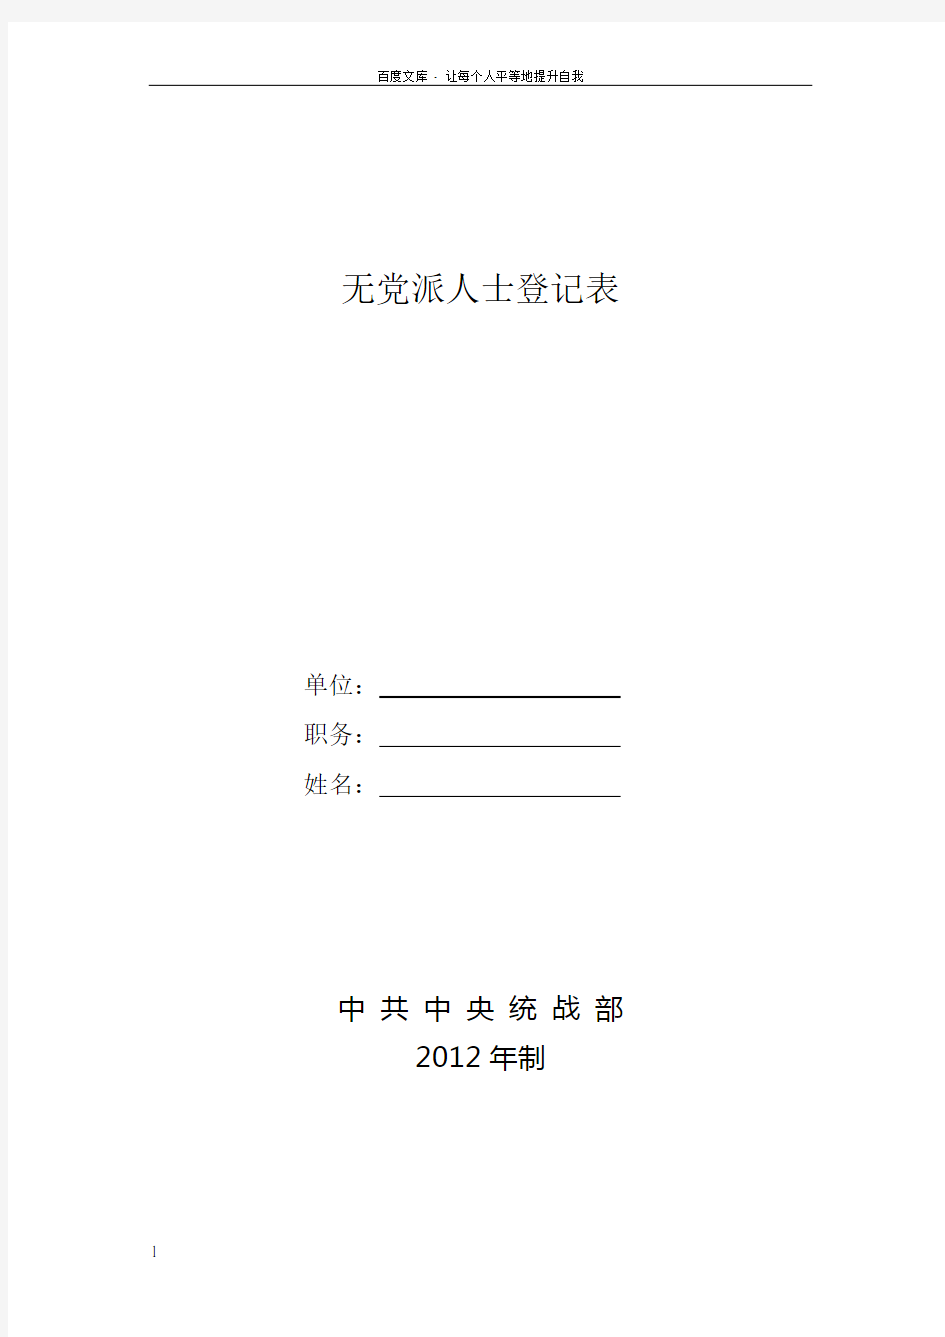 无党派人士登记表(样表)(2012)